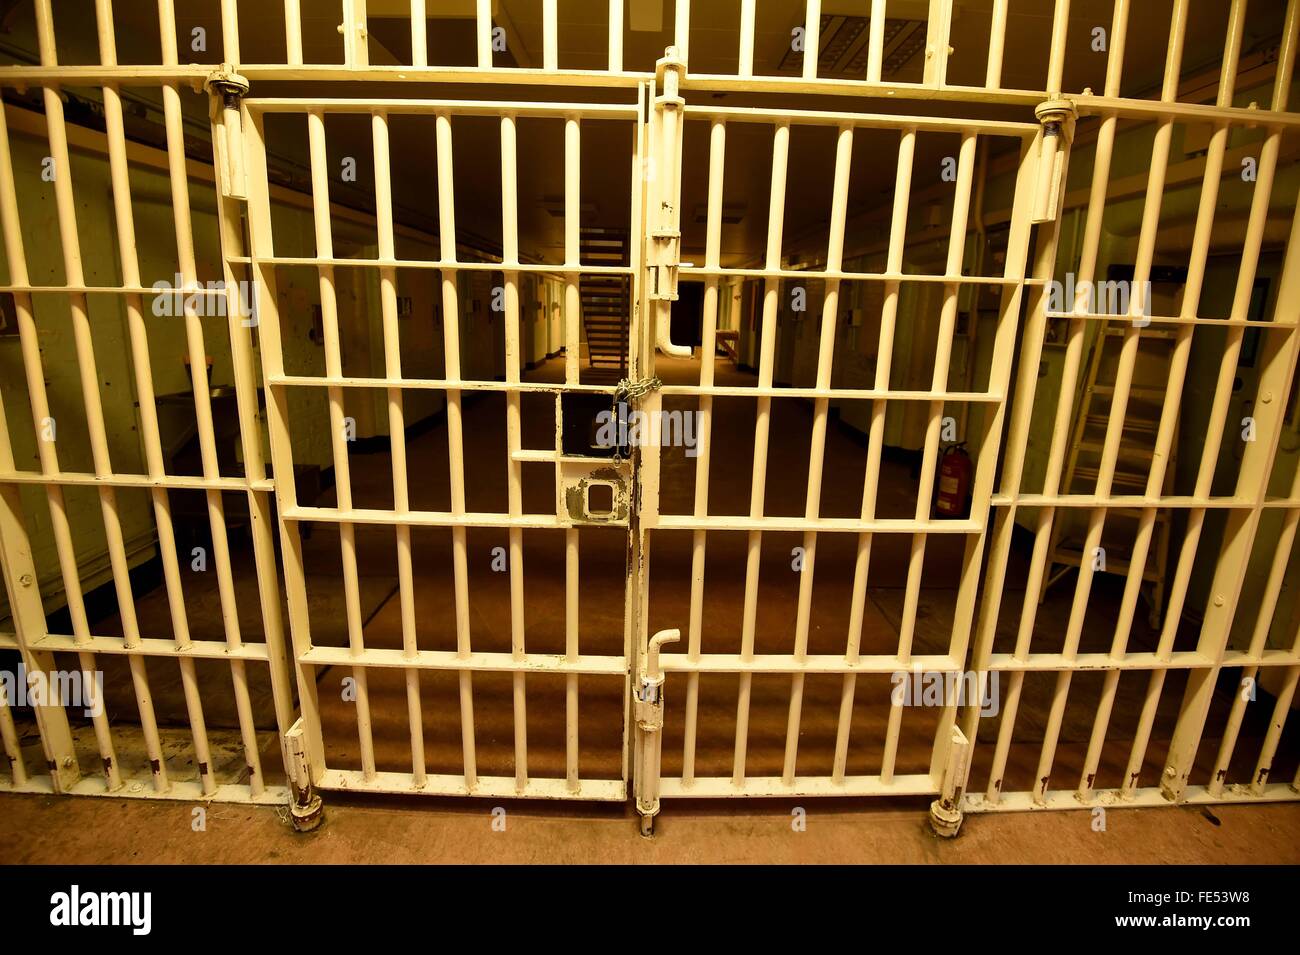 HMP Dorchester Prison, prison bars, Dorset, Britain, UK Stock Photo